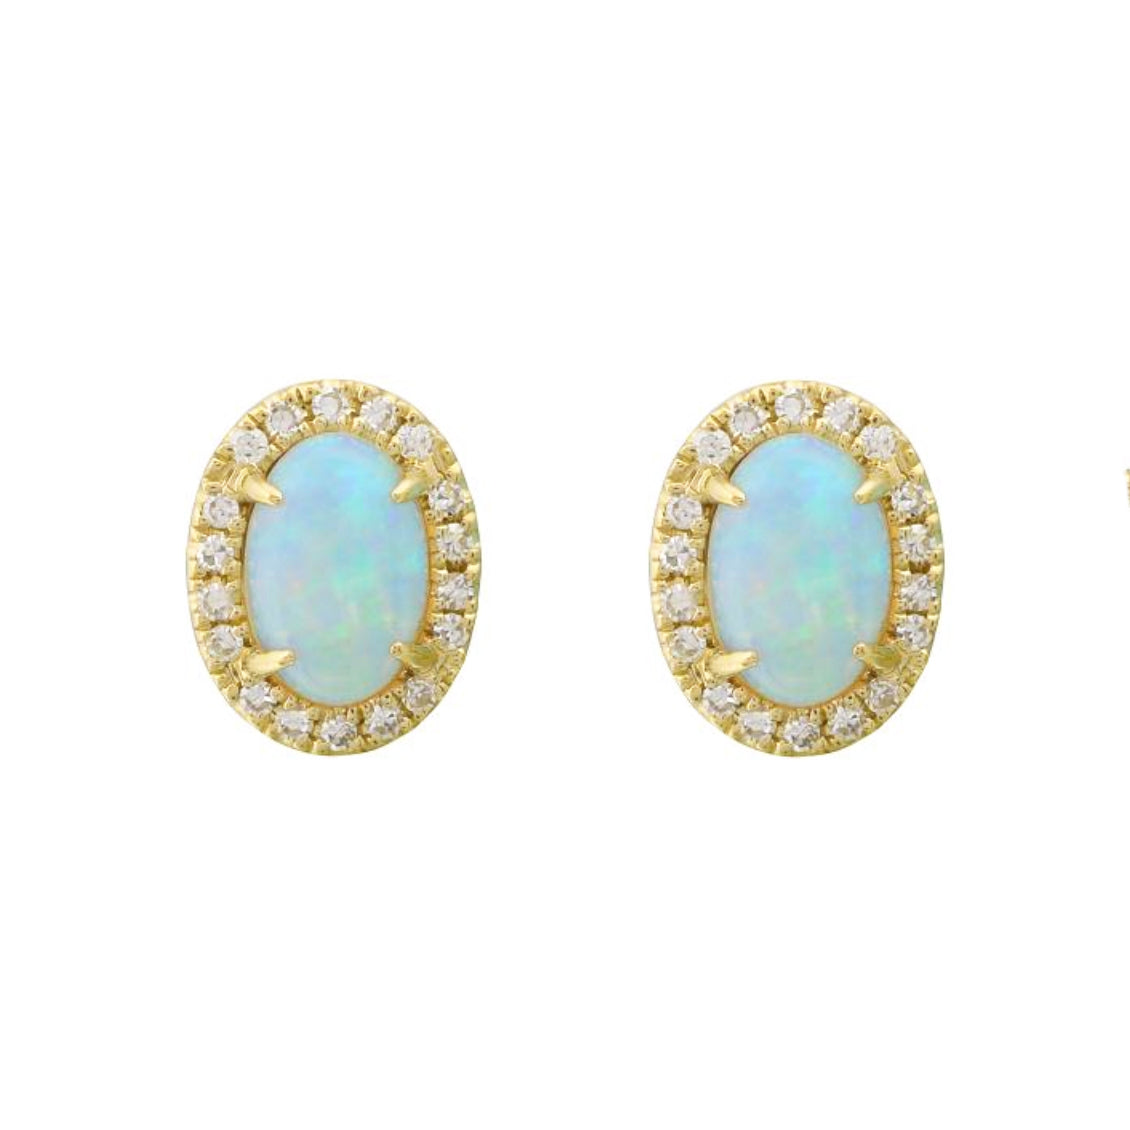 ethiopian opal stud earrings with diamonds